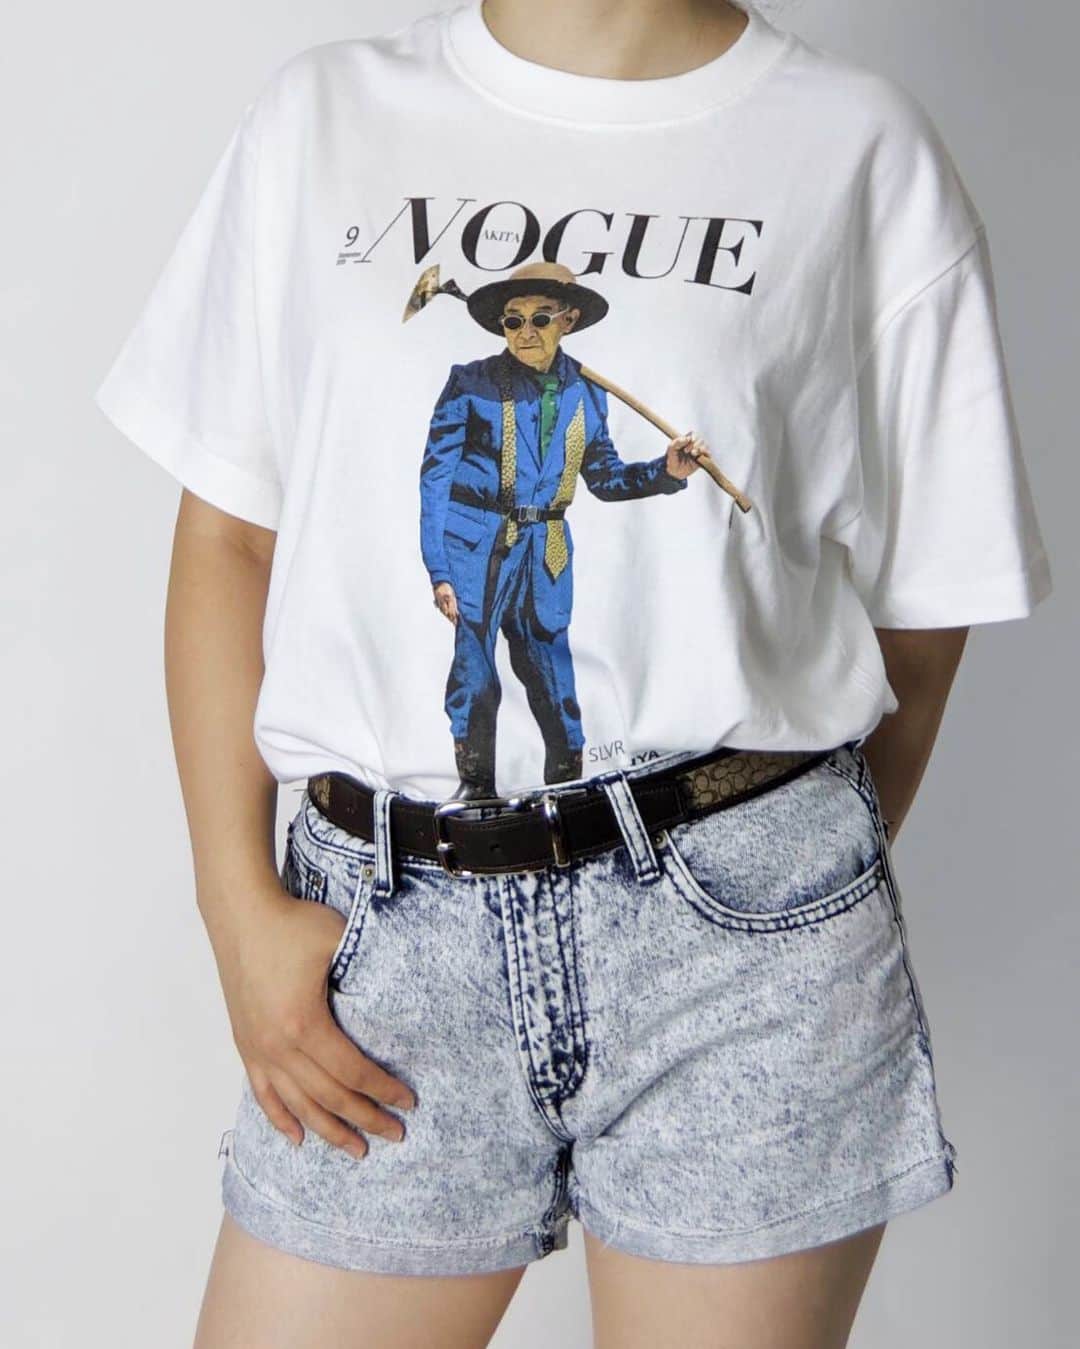 村崎樹江里のインスタグラム：「. . NOGUE (農具: hoe) . . ずっと片想いをしてたTシャツを買えて、嬉しくて早速着てみた . @slvr.tty . . #シルテツ展 #シルバーテツヤ #silvertetsuya  #vogue #nogue #ootd #fashion #shirt #outfits #白tコーデ #白T #今日のコーデ #女子 . . .」